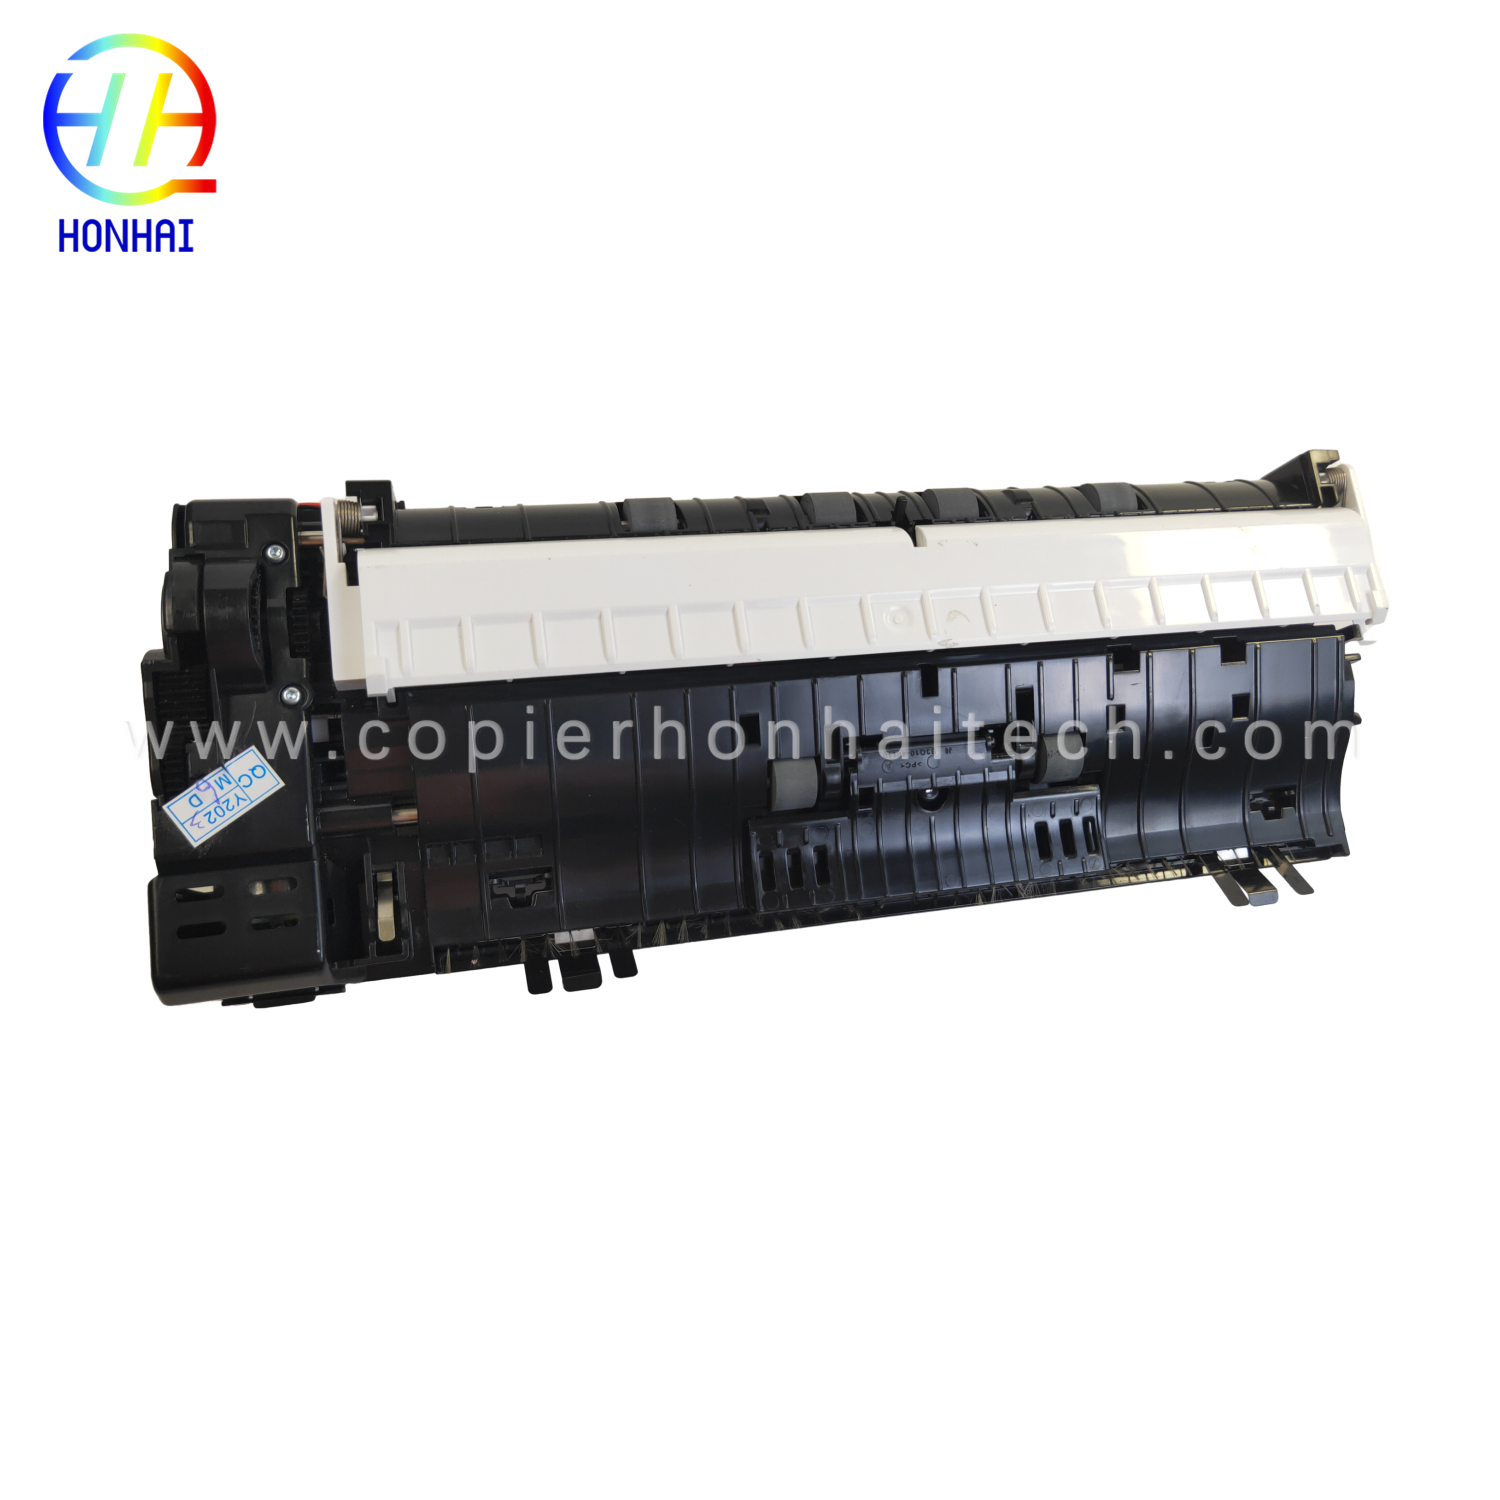 https://www.copierhonhaitech.com/original-adf-assembly-for-hp-color-laserjet-m277-product/